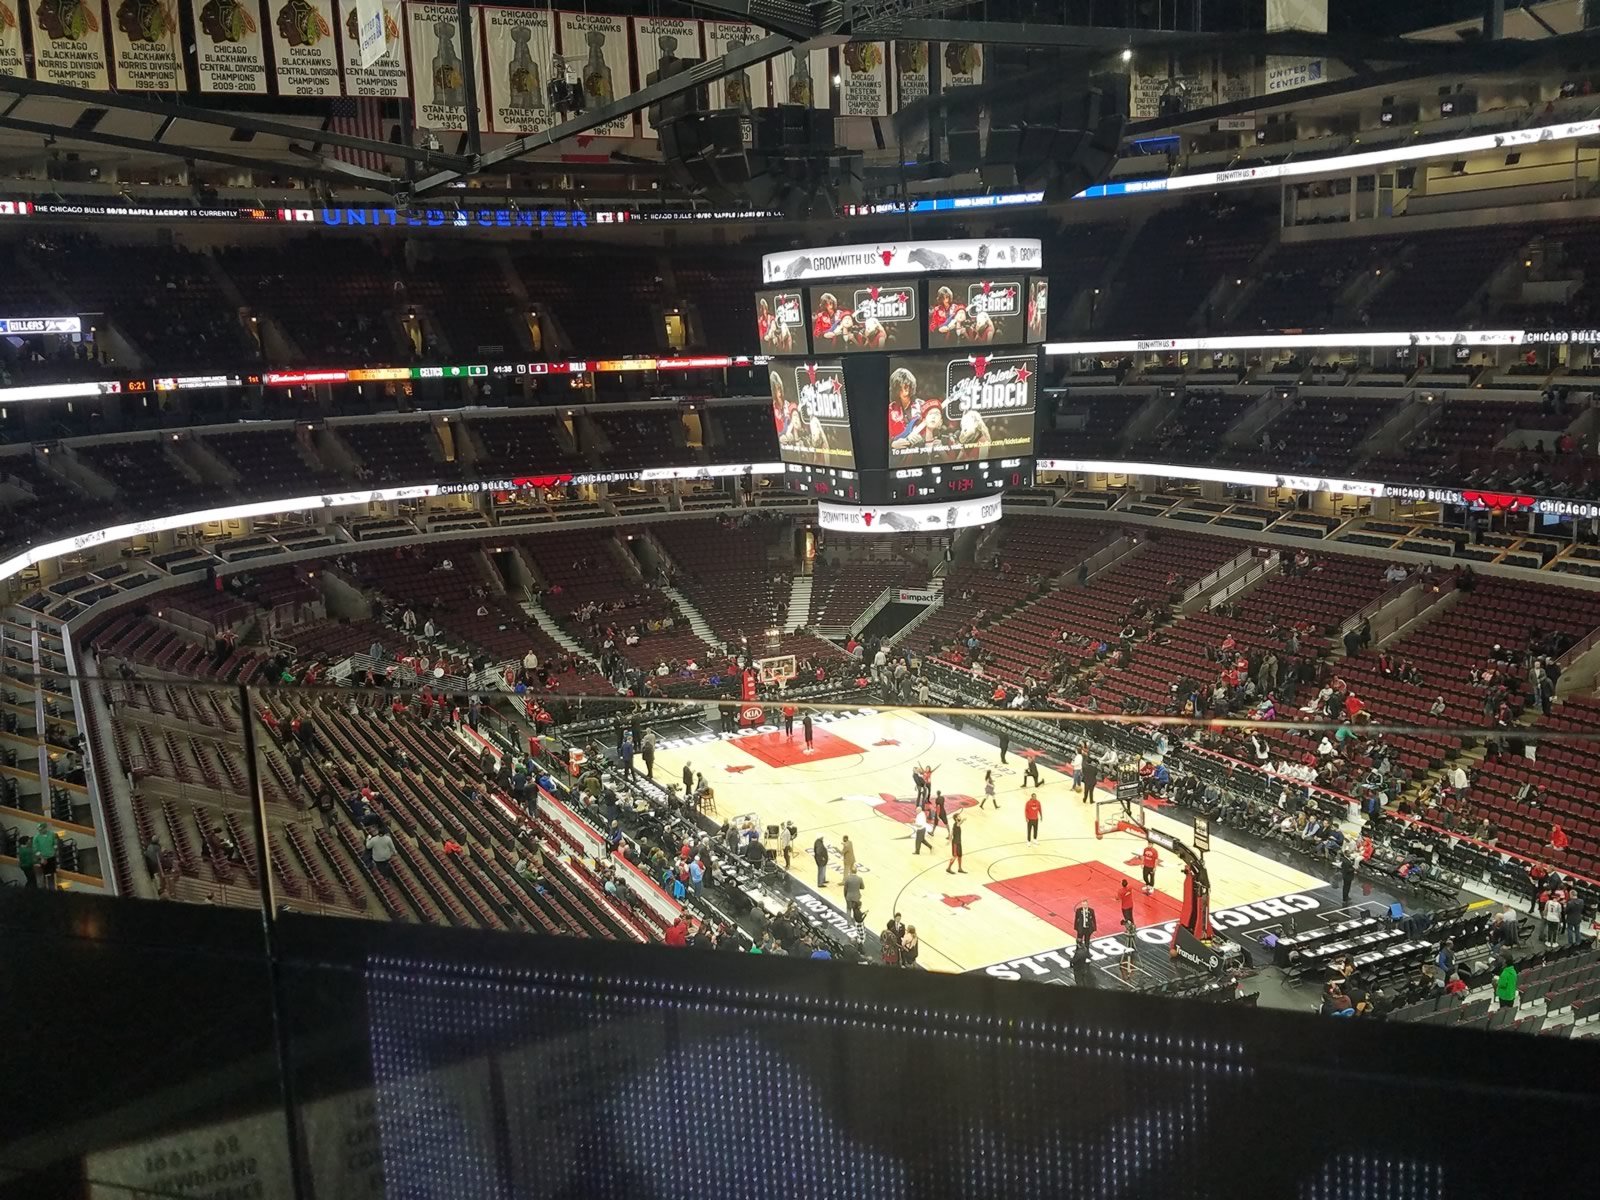 Chicago Bulls Locker Room - Near West Side - United Center